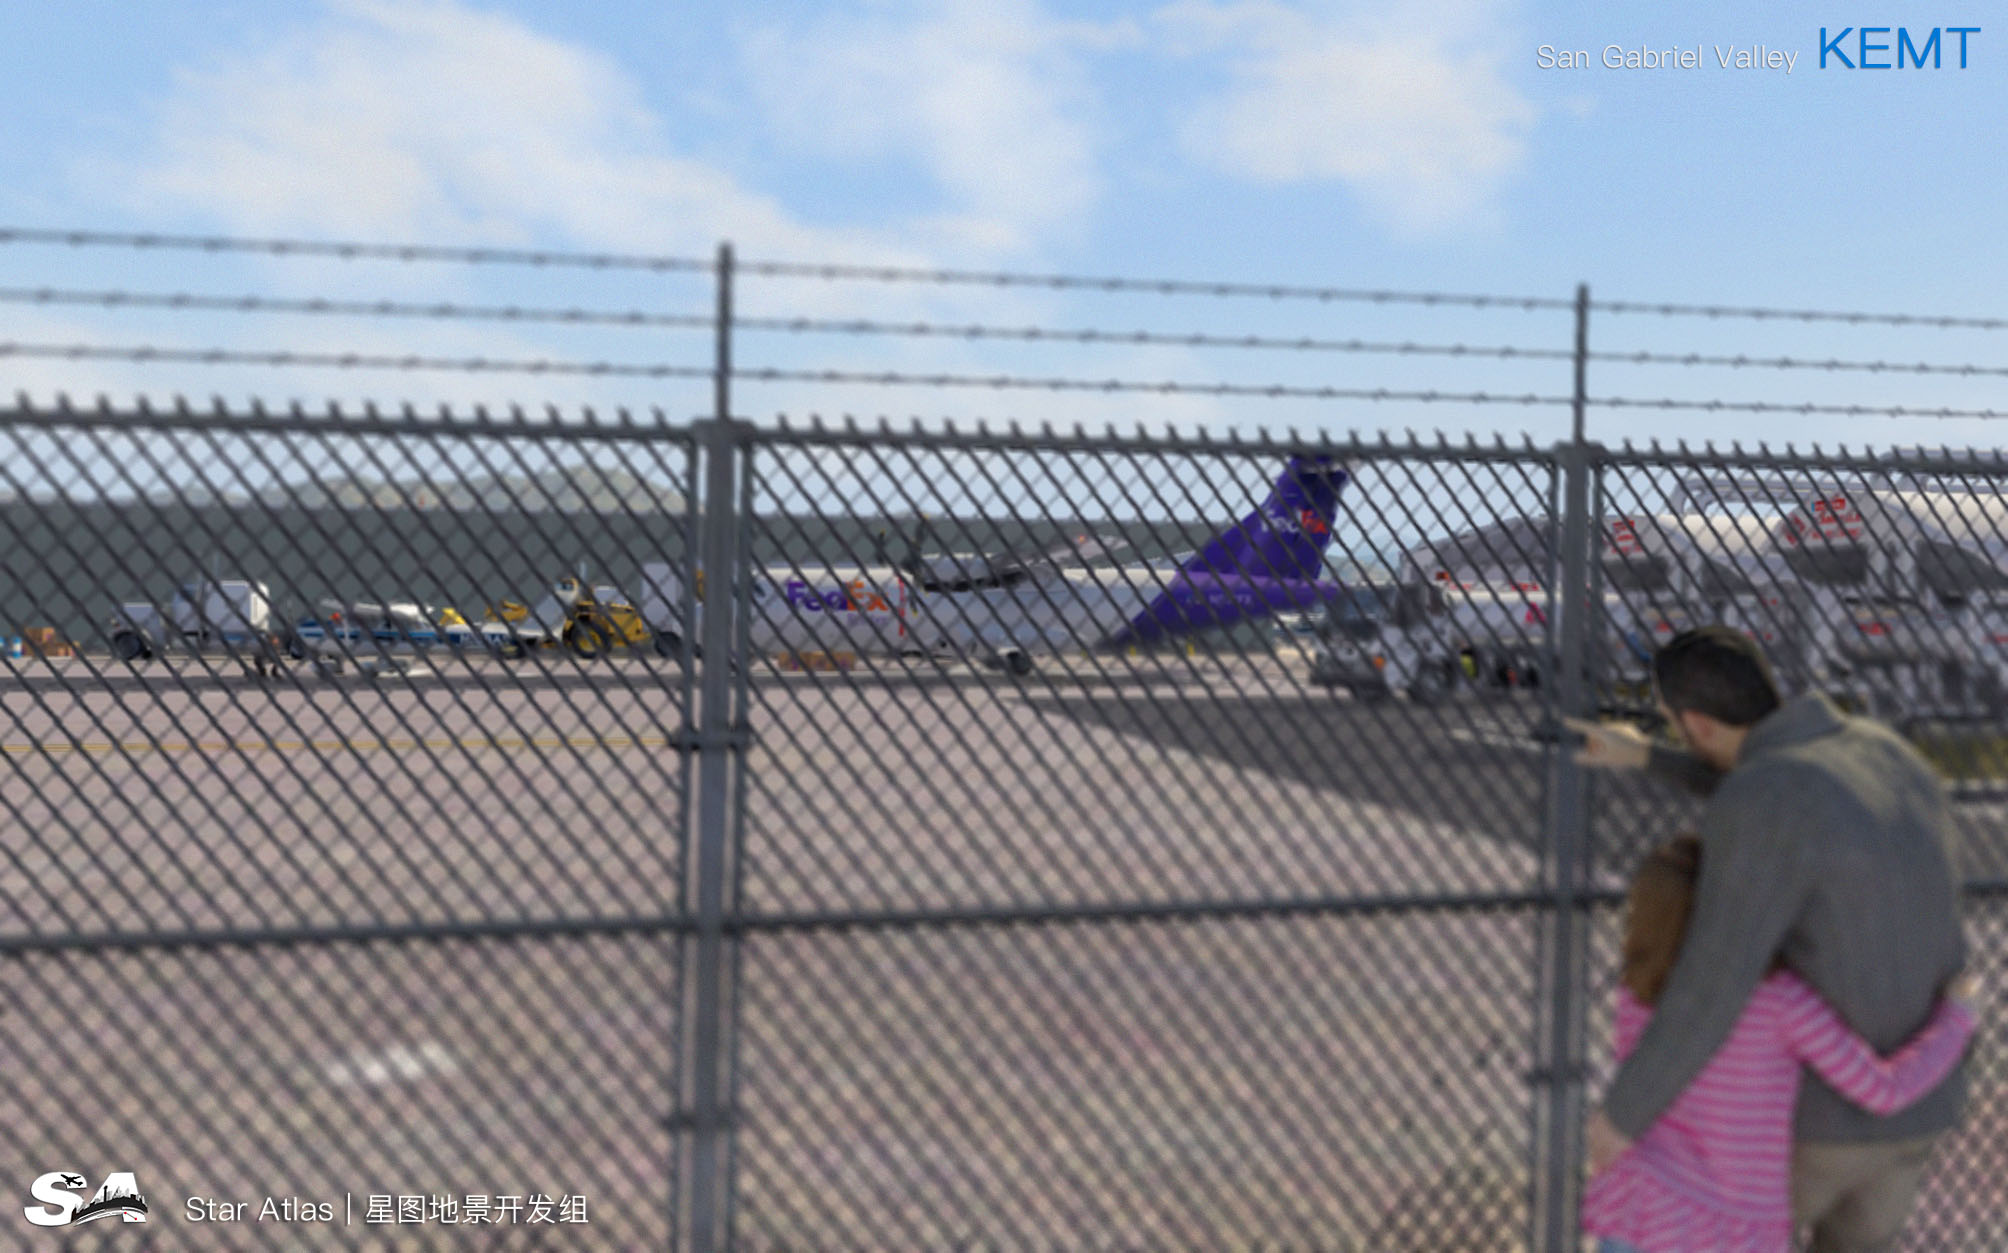 【X-Plane】KEMT-圣盖博谷机场 HD 1.0-3448 